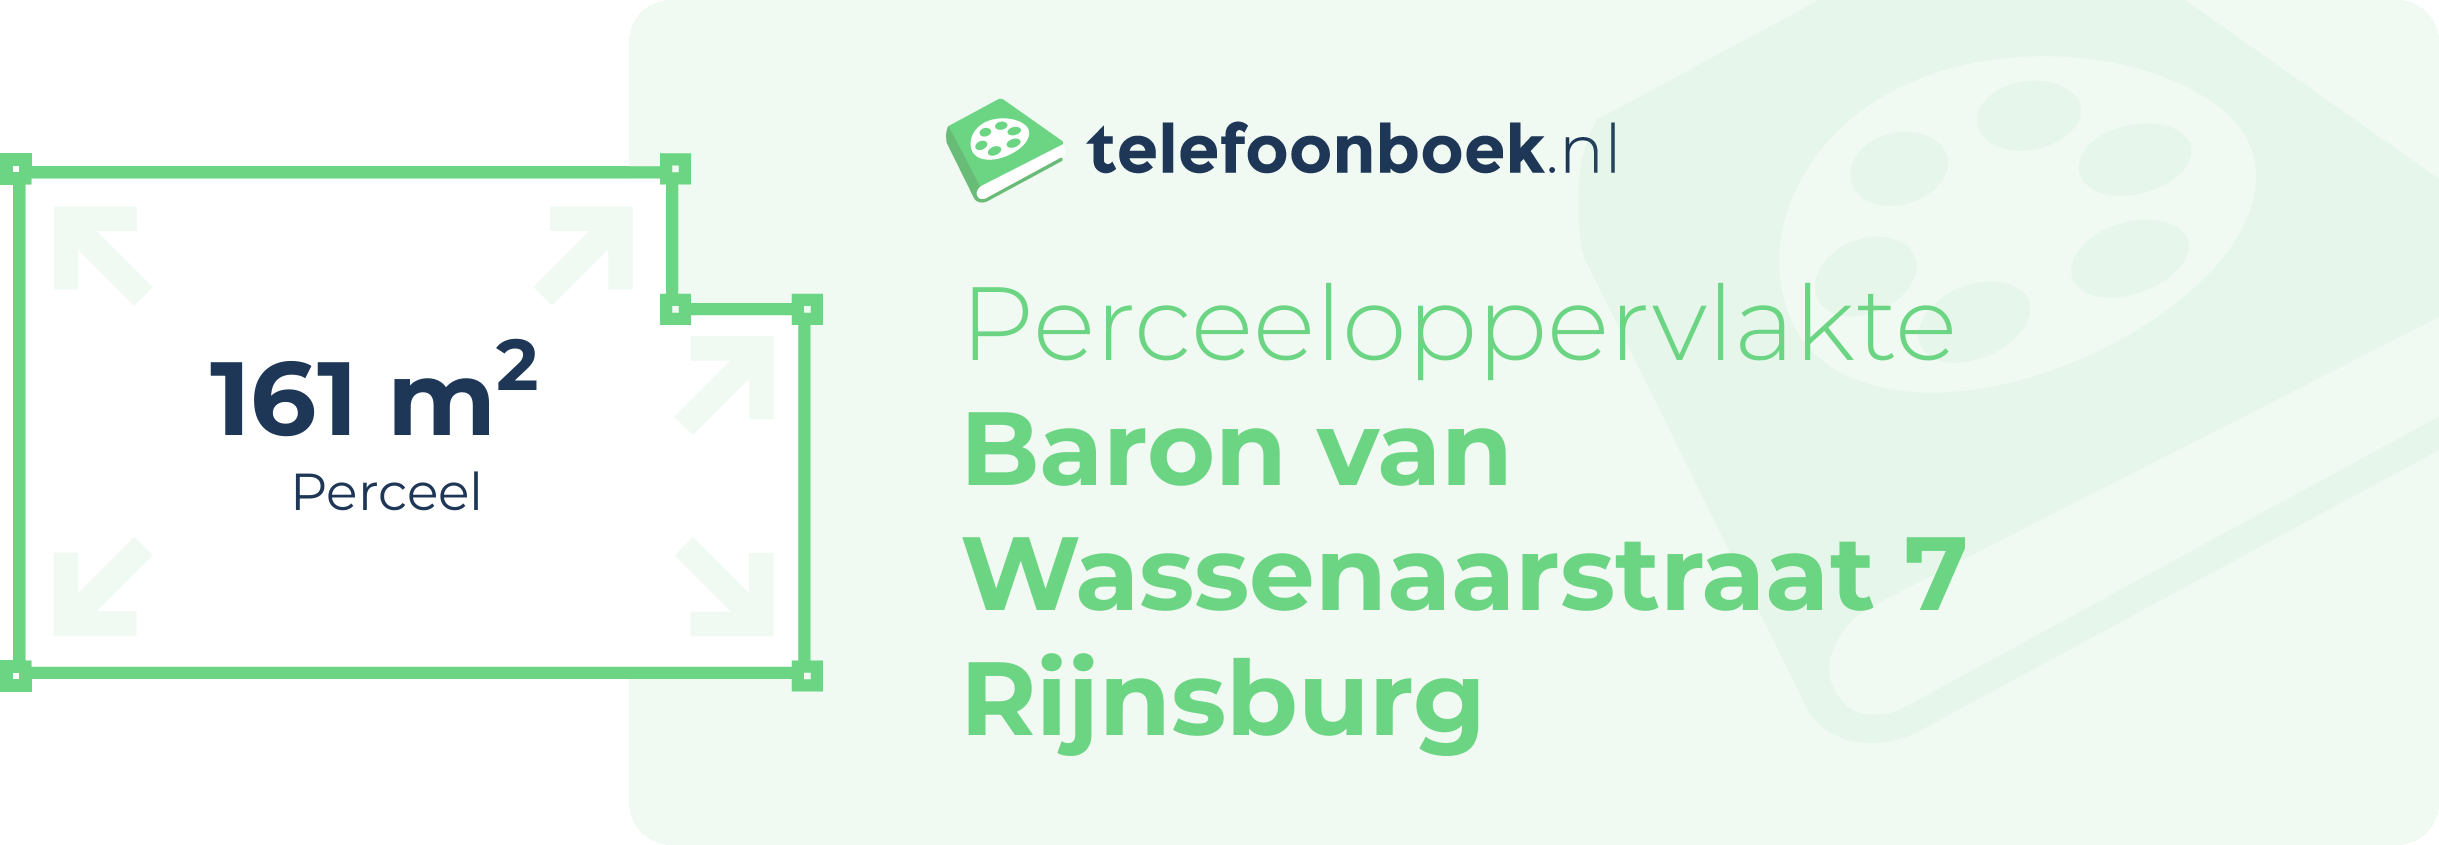 Perceeloppervlakte Baron Van Wassenaarstraat 7 Rijnsburg